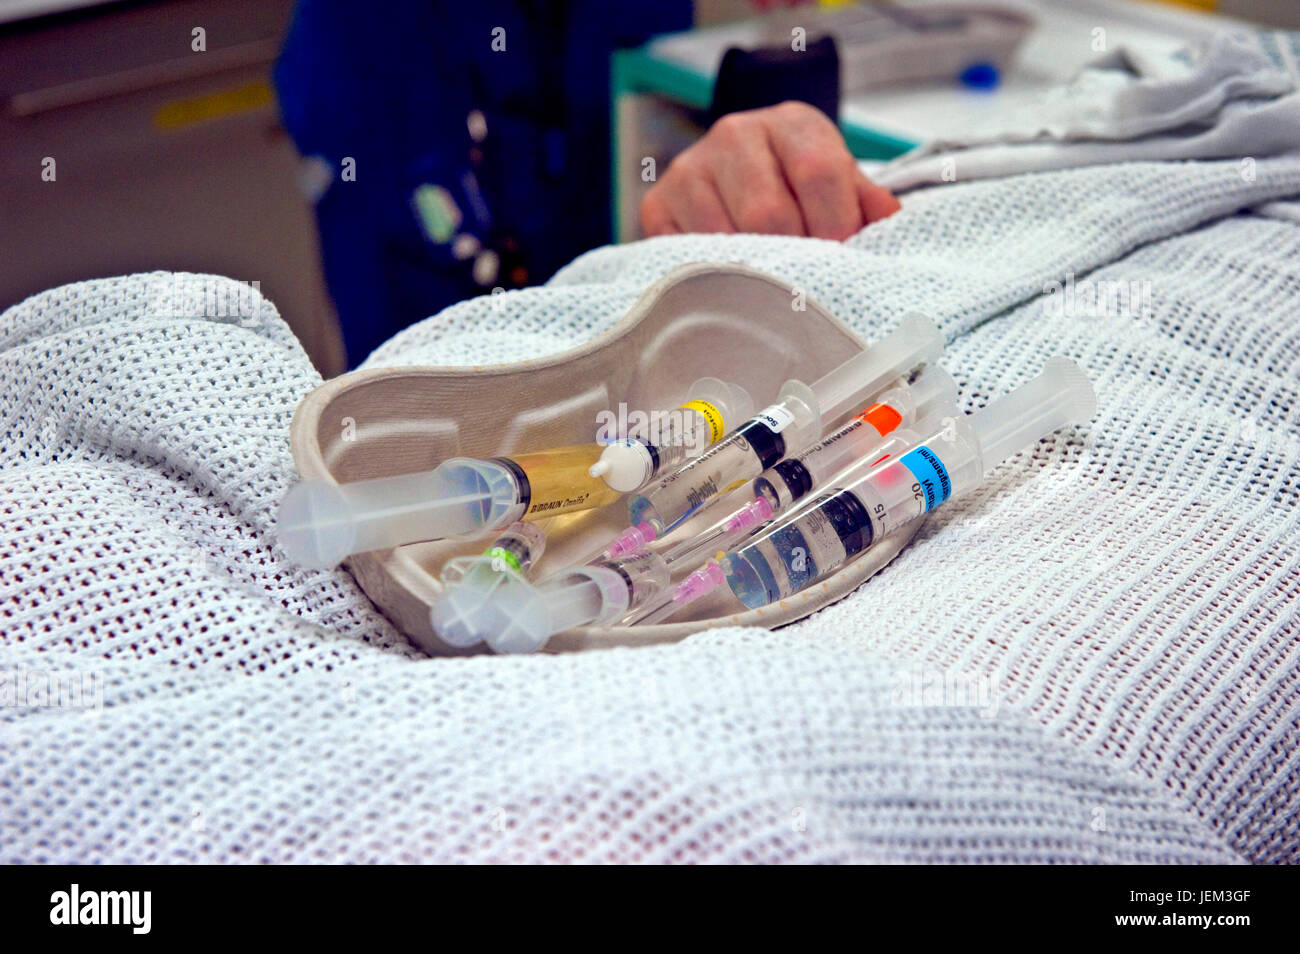 Tablett mit Anästhetika verabreicht wird, um einen Patienten zu einer CABG (kardiale Artery Bypass Graft) operiert werden. Stockfoto